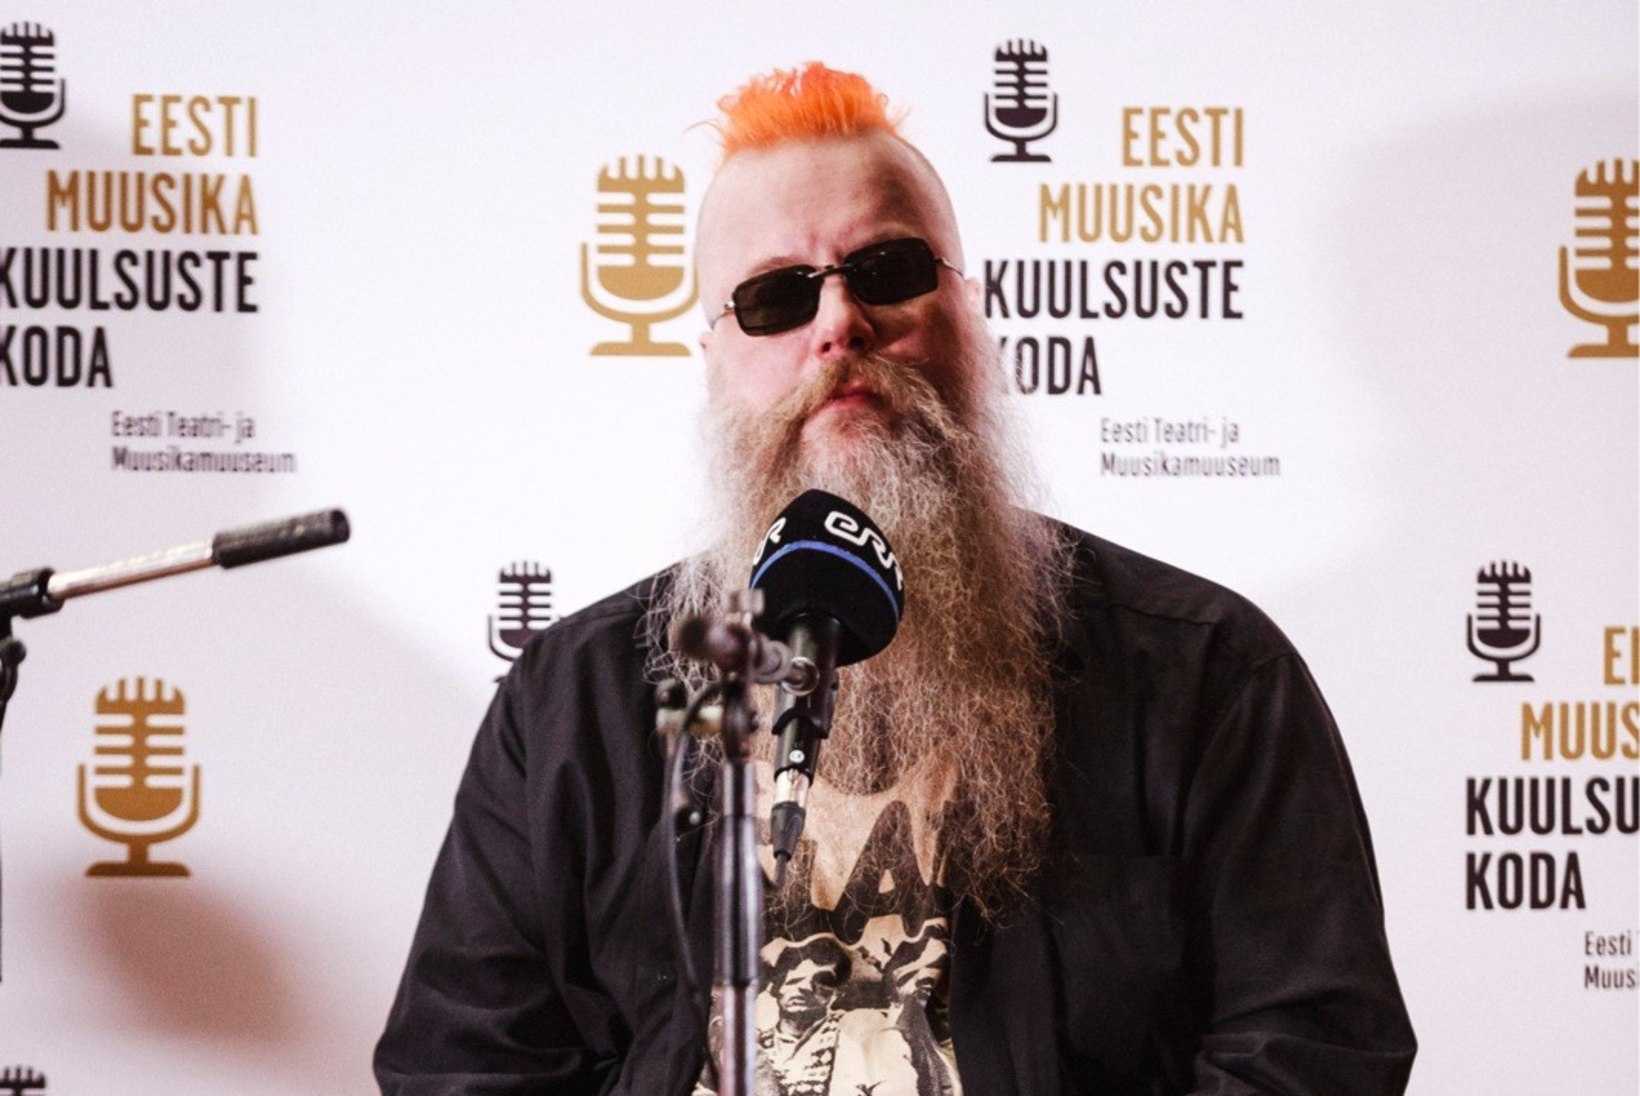 Villu Tamme: Eesti punk polnud mingi tohutu vastupanuliikumine. Olid tüübid, kes üritasid väljamaa meeste moodi välja näha